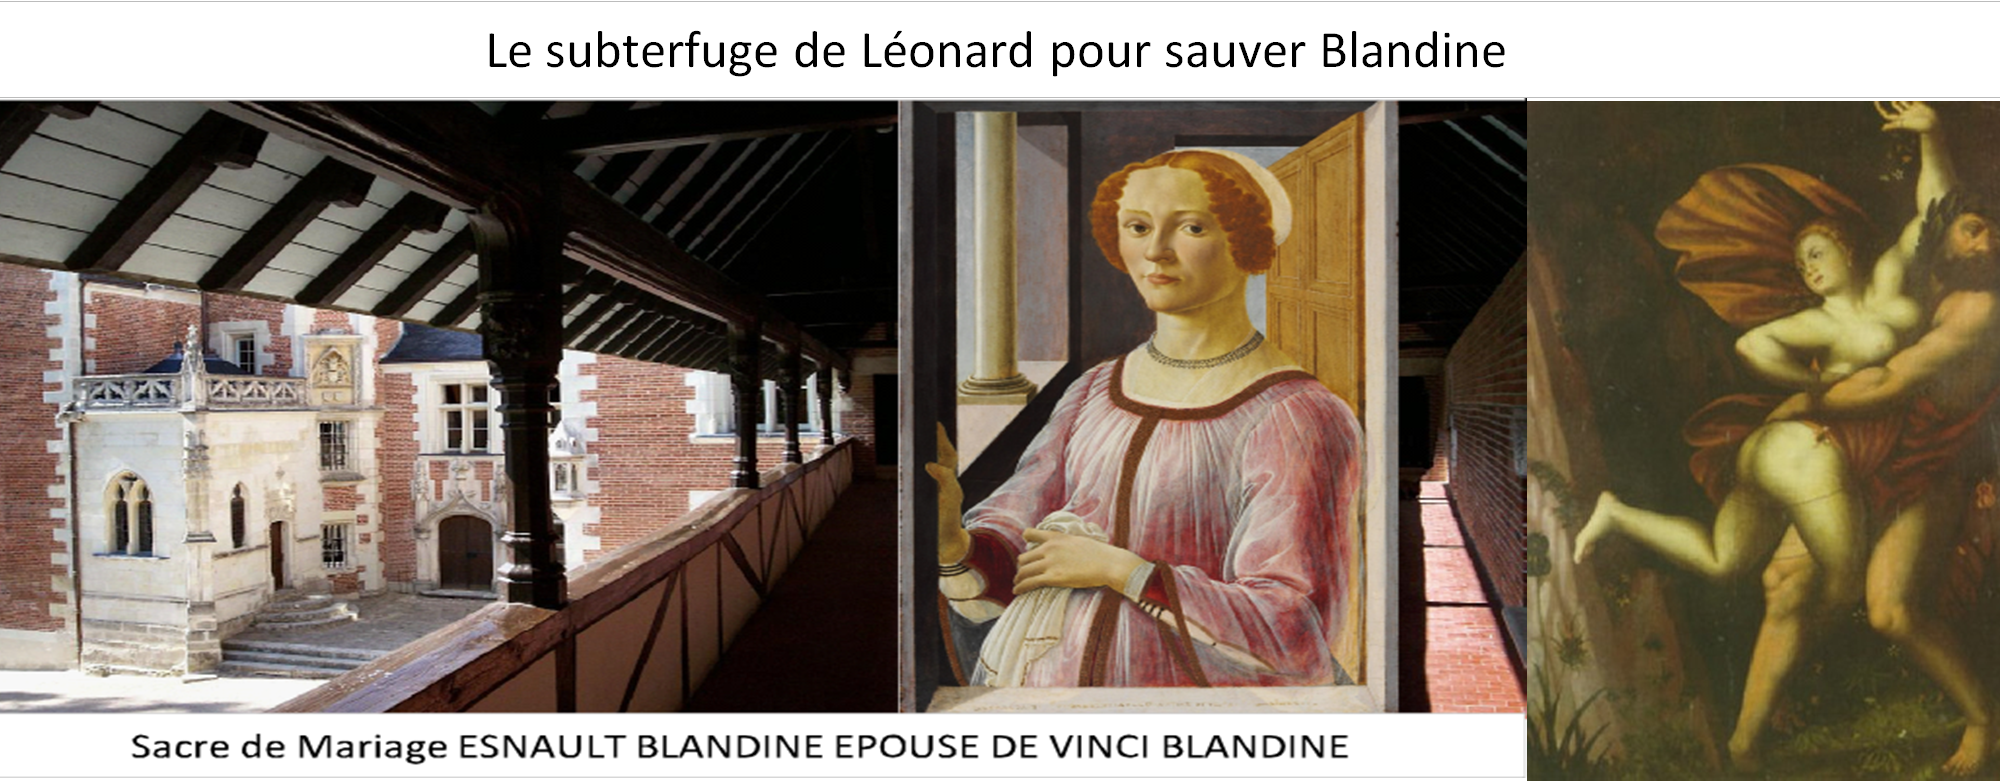 Le subterfuge de Léonard pour sauver Blandine